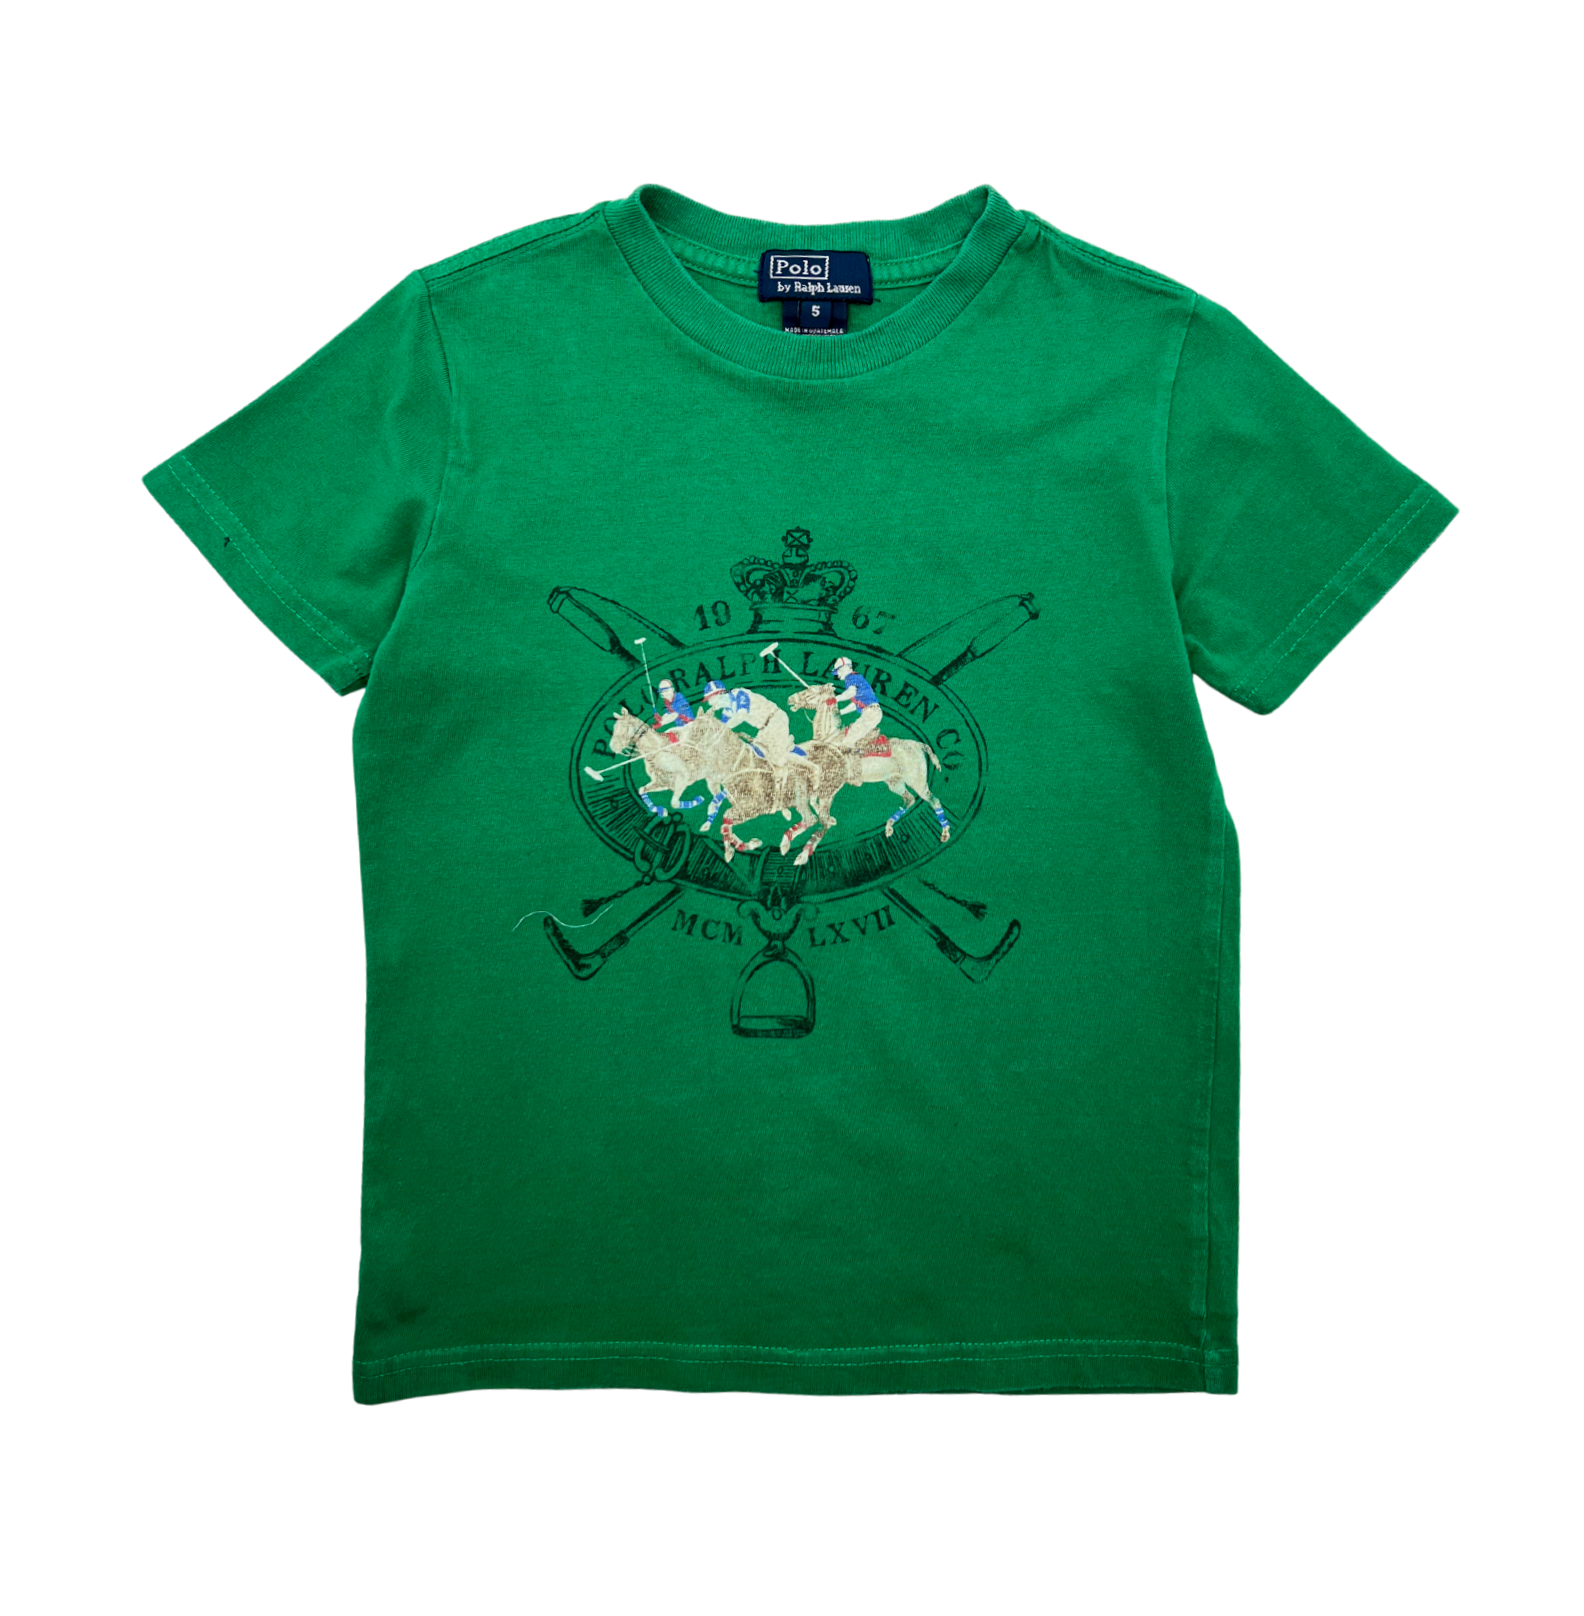 RALPH LAUREN - Green T-shirt - 5 years old